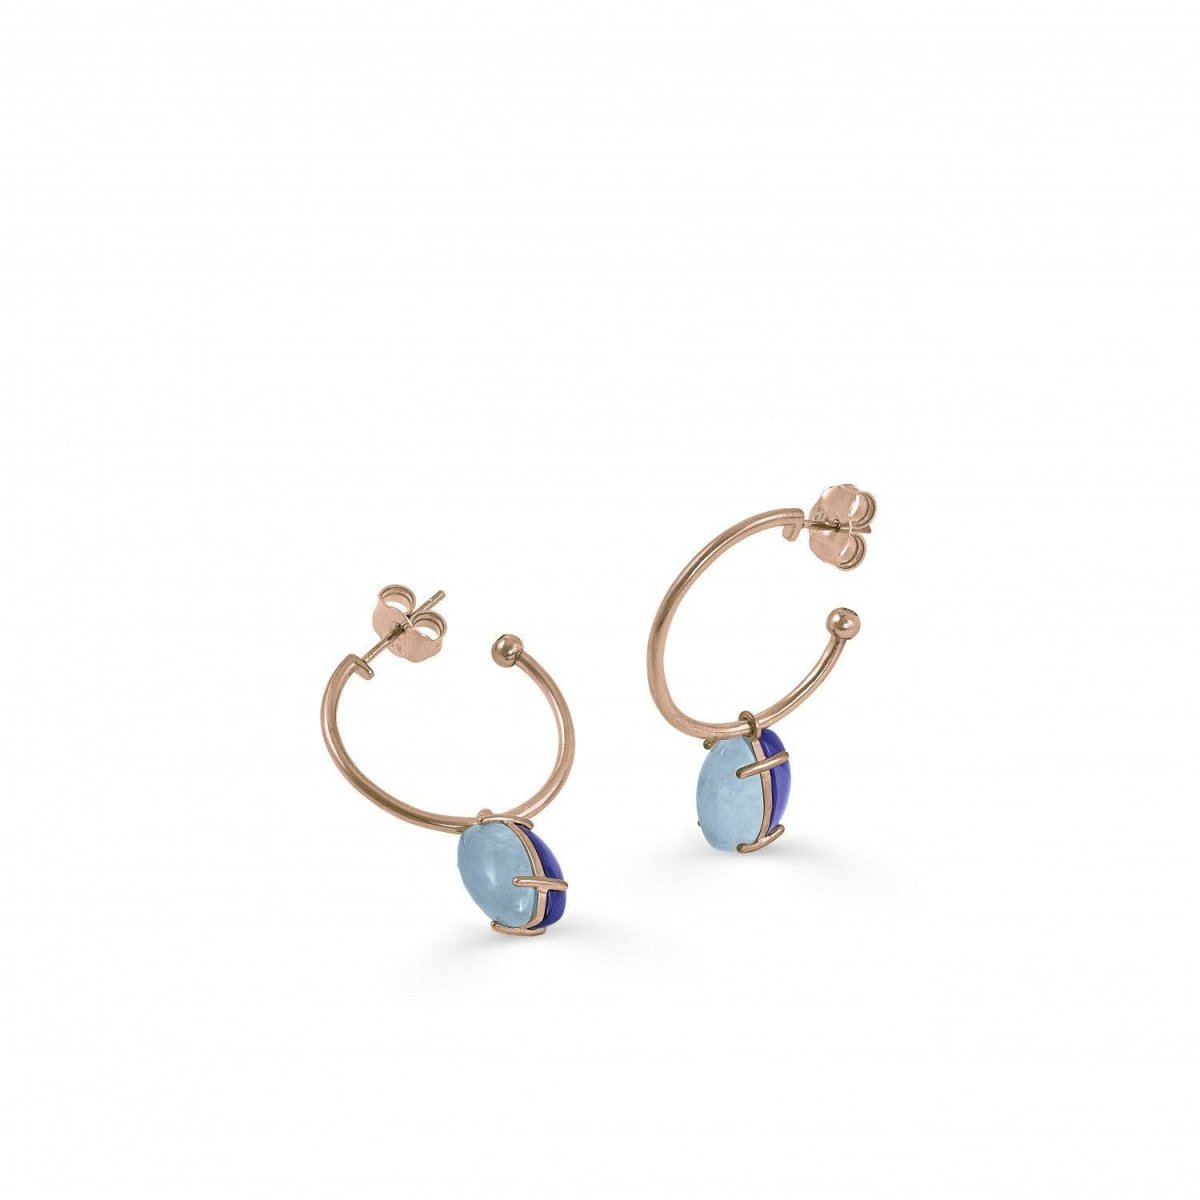 Earrings - Hoop earrings with blue adamantine quartz pendants